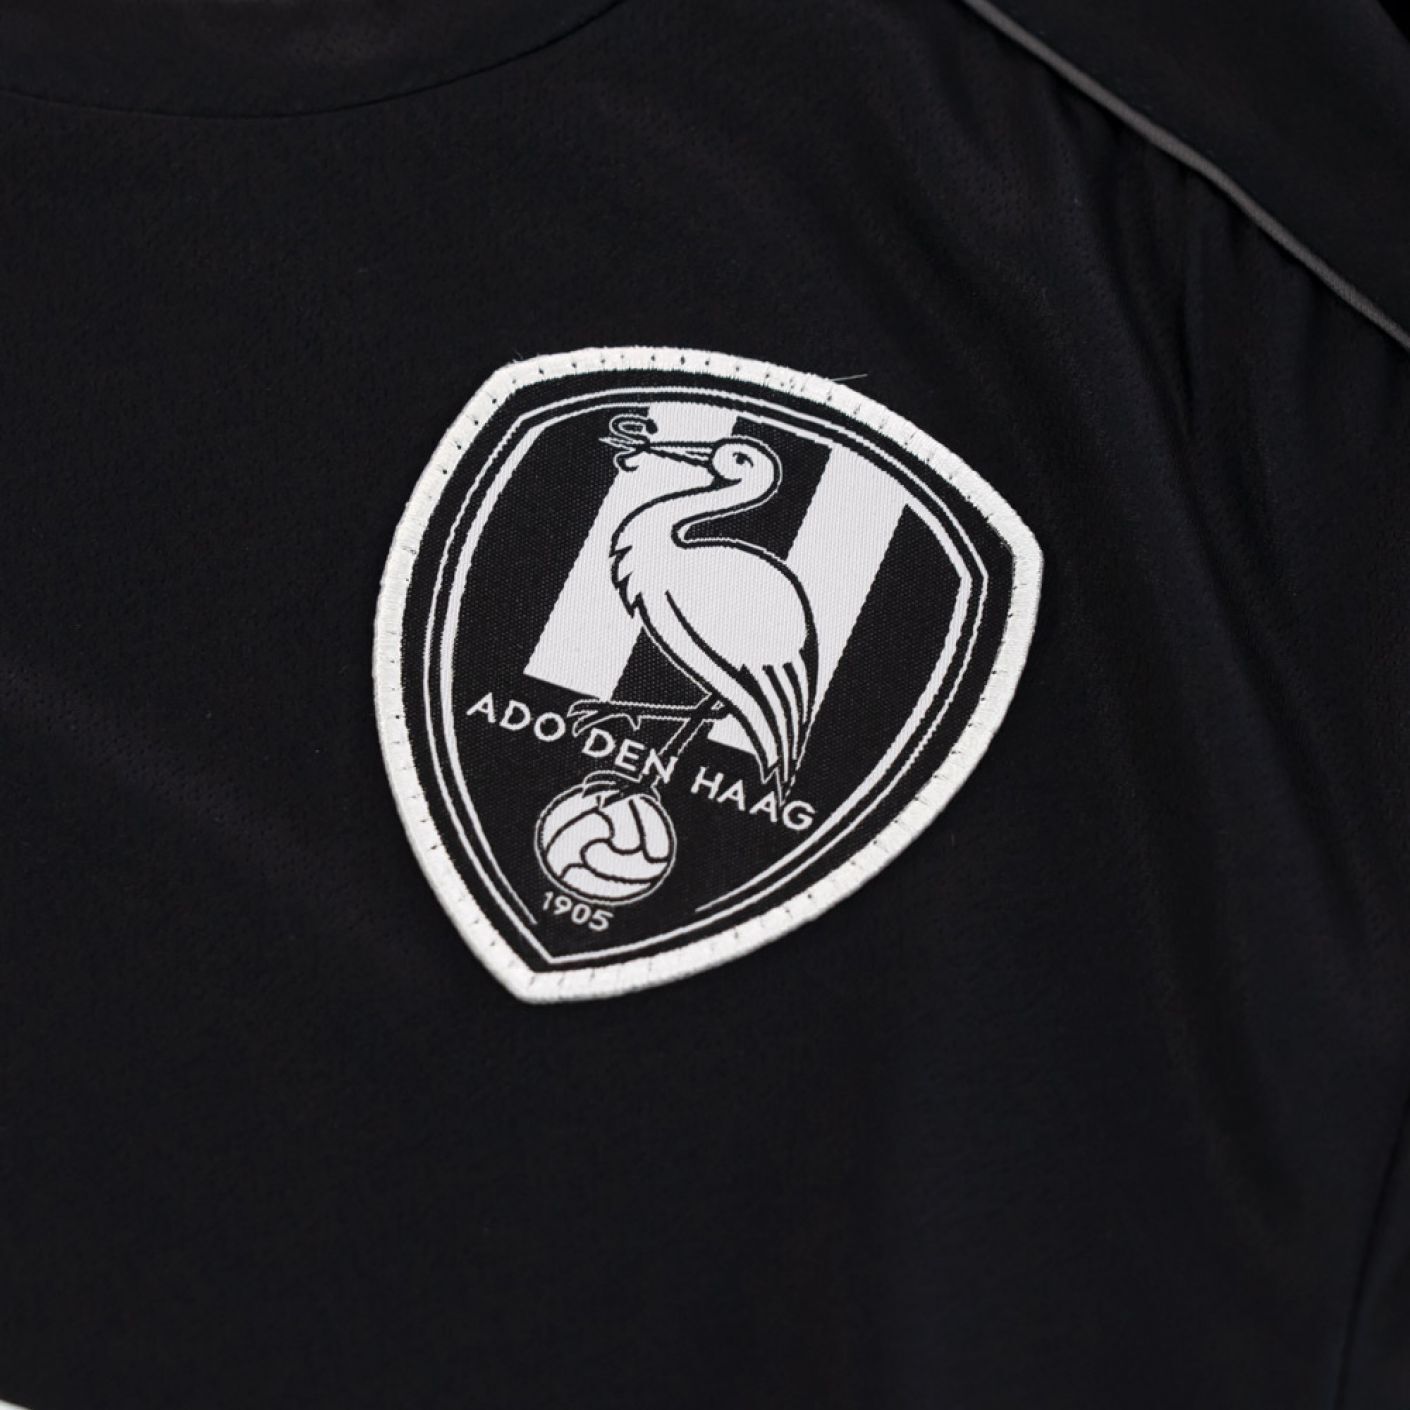 ADO Den Haag derde shirt seizoen 2020/2021